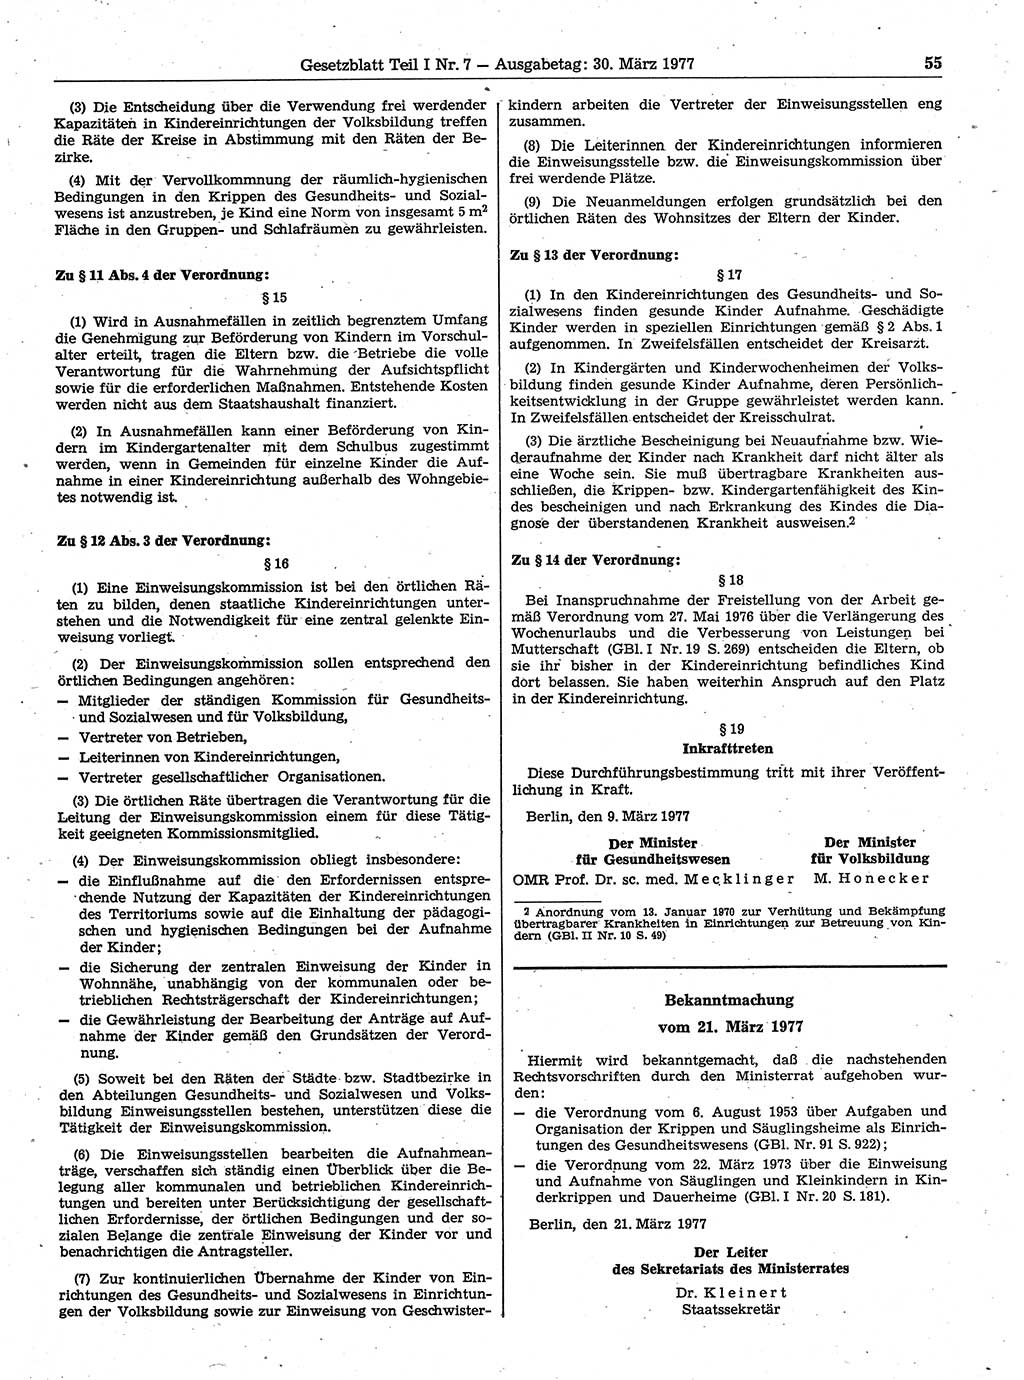 Gesetzblatt (GBl.) der Deutschen Demokratischen Republik (DDR) Teil Ⅰ 1977, Seite 55 (GBl. DDR Ⅰ 1977, S. 55)